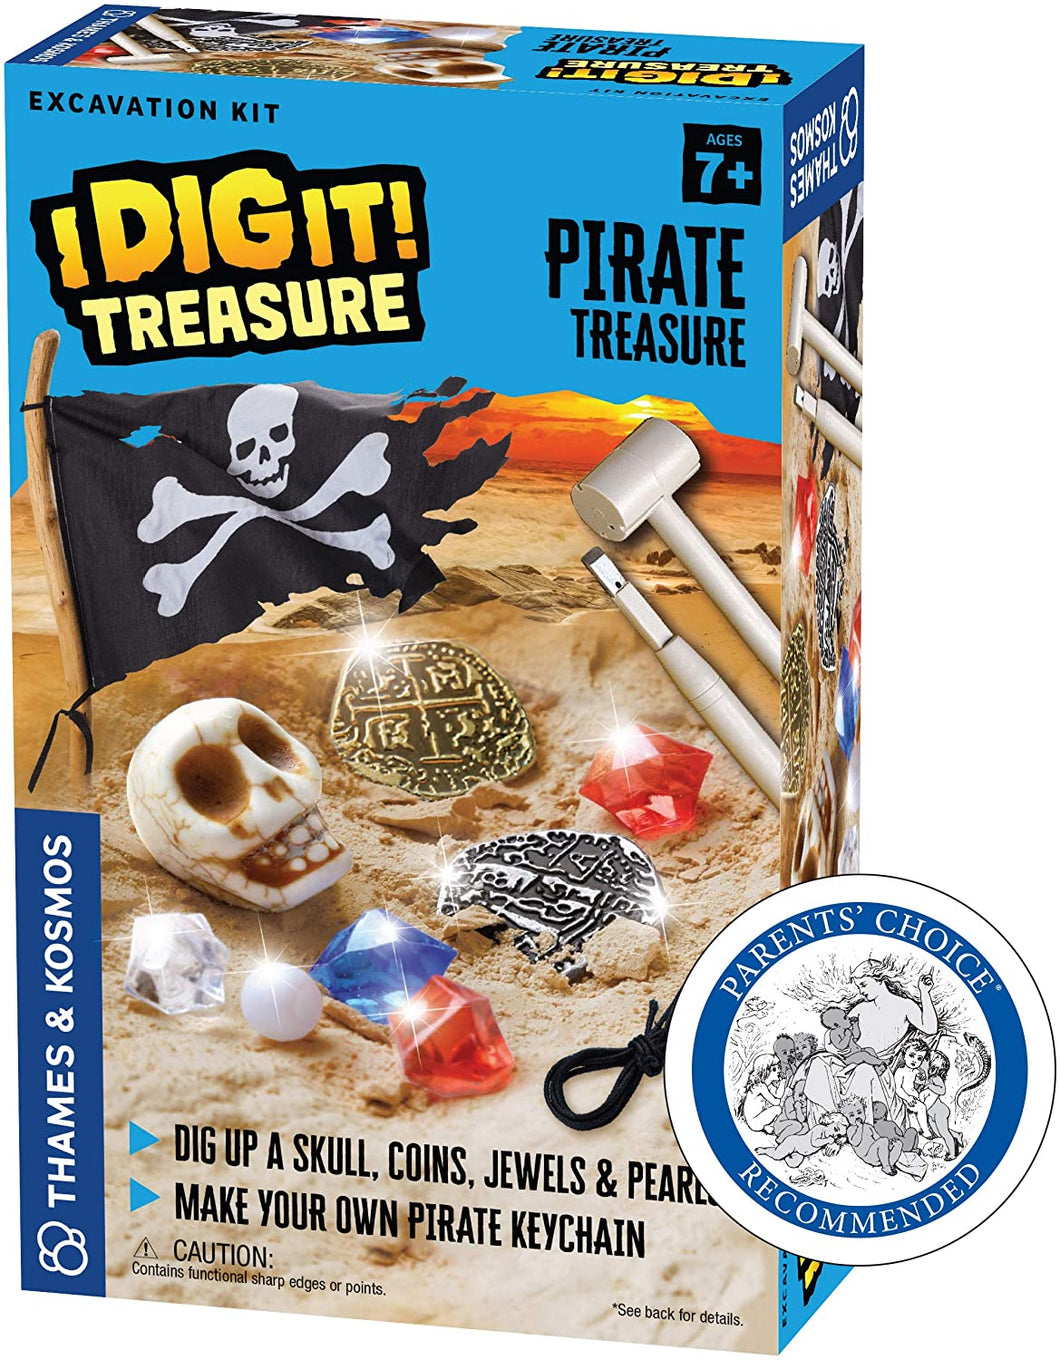 I Dig It! - Treasure Excavation Kit